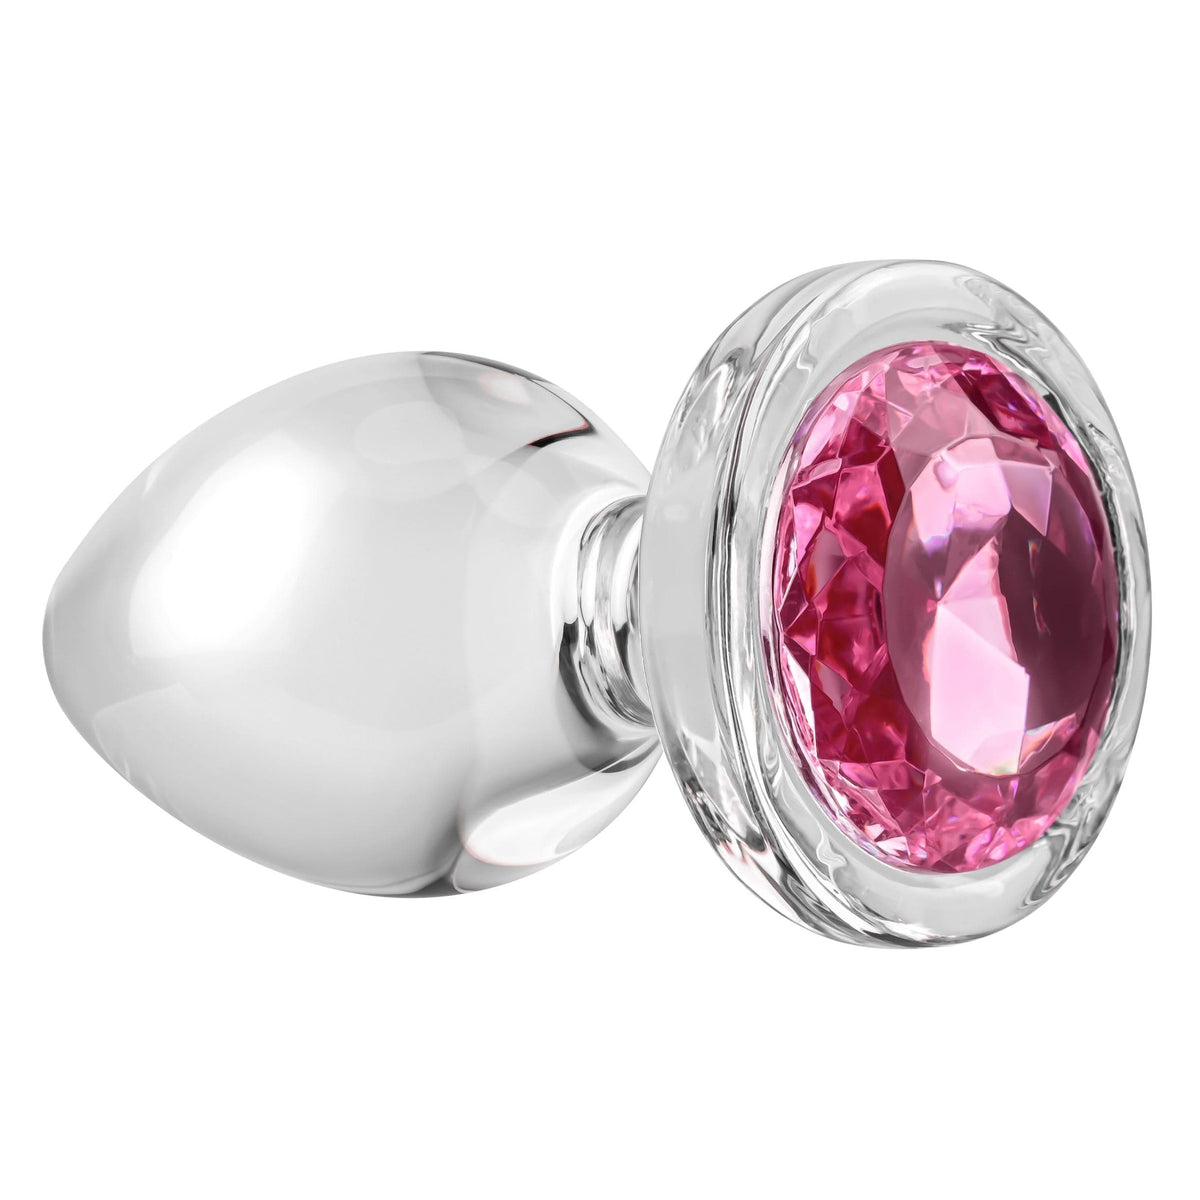 pink gem glass plug large pink